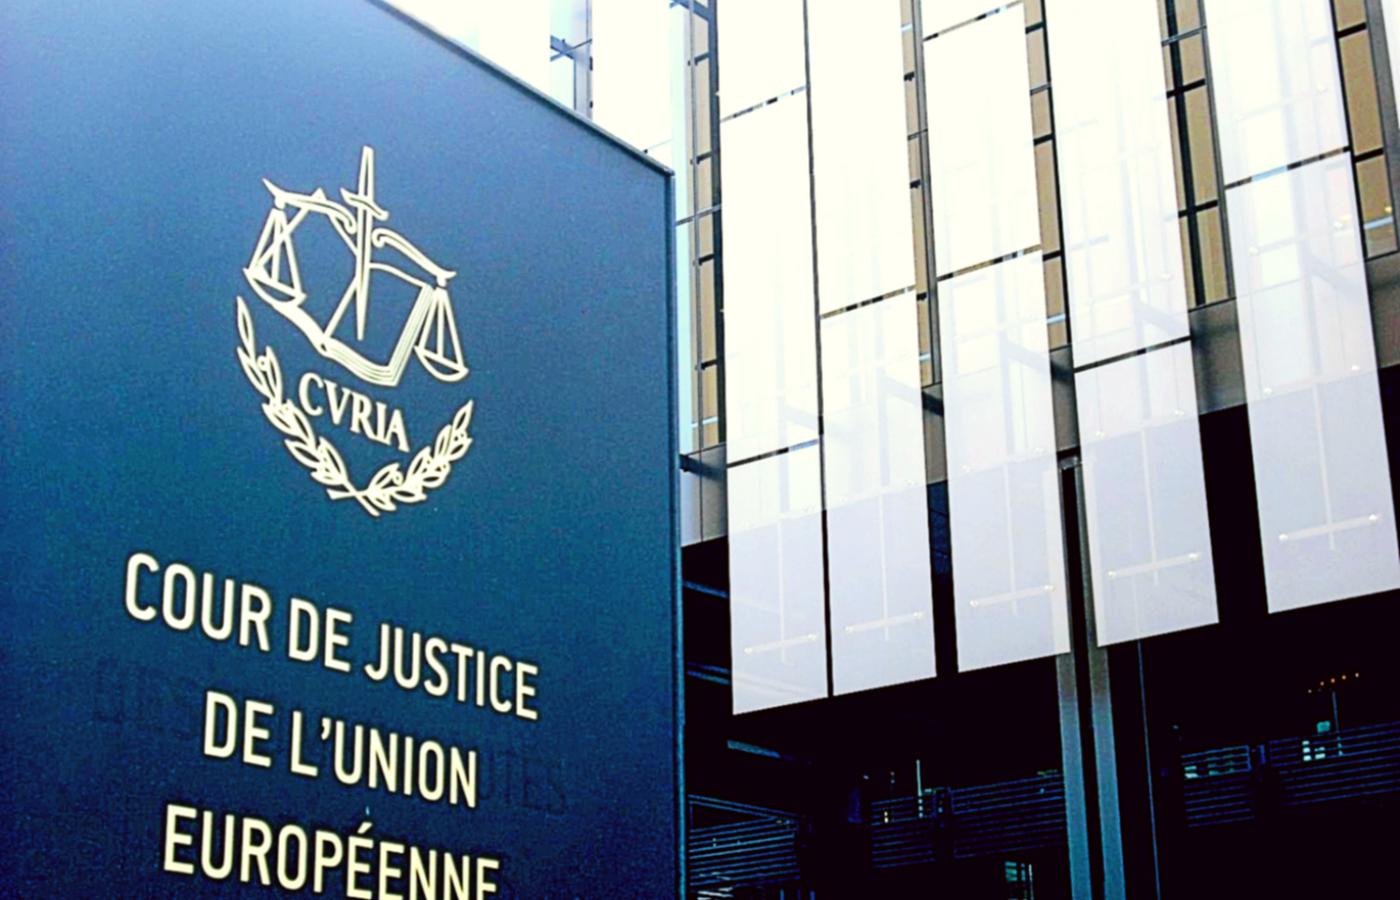 Jest już po pierwszej rozprawie przed Trybunałem Sprawiedliwości UE dotyczącej skargi Komisji Europejskiej przeciwko Polsce.